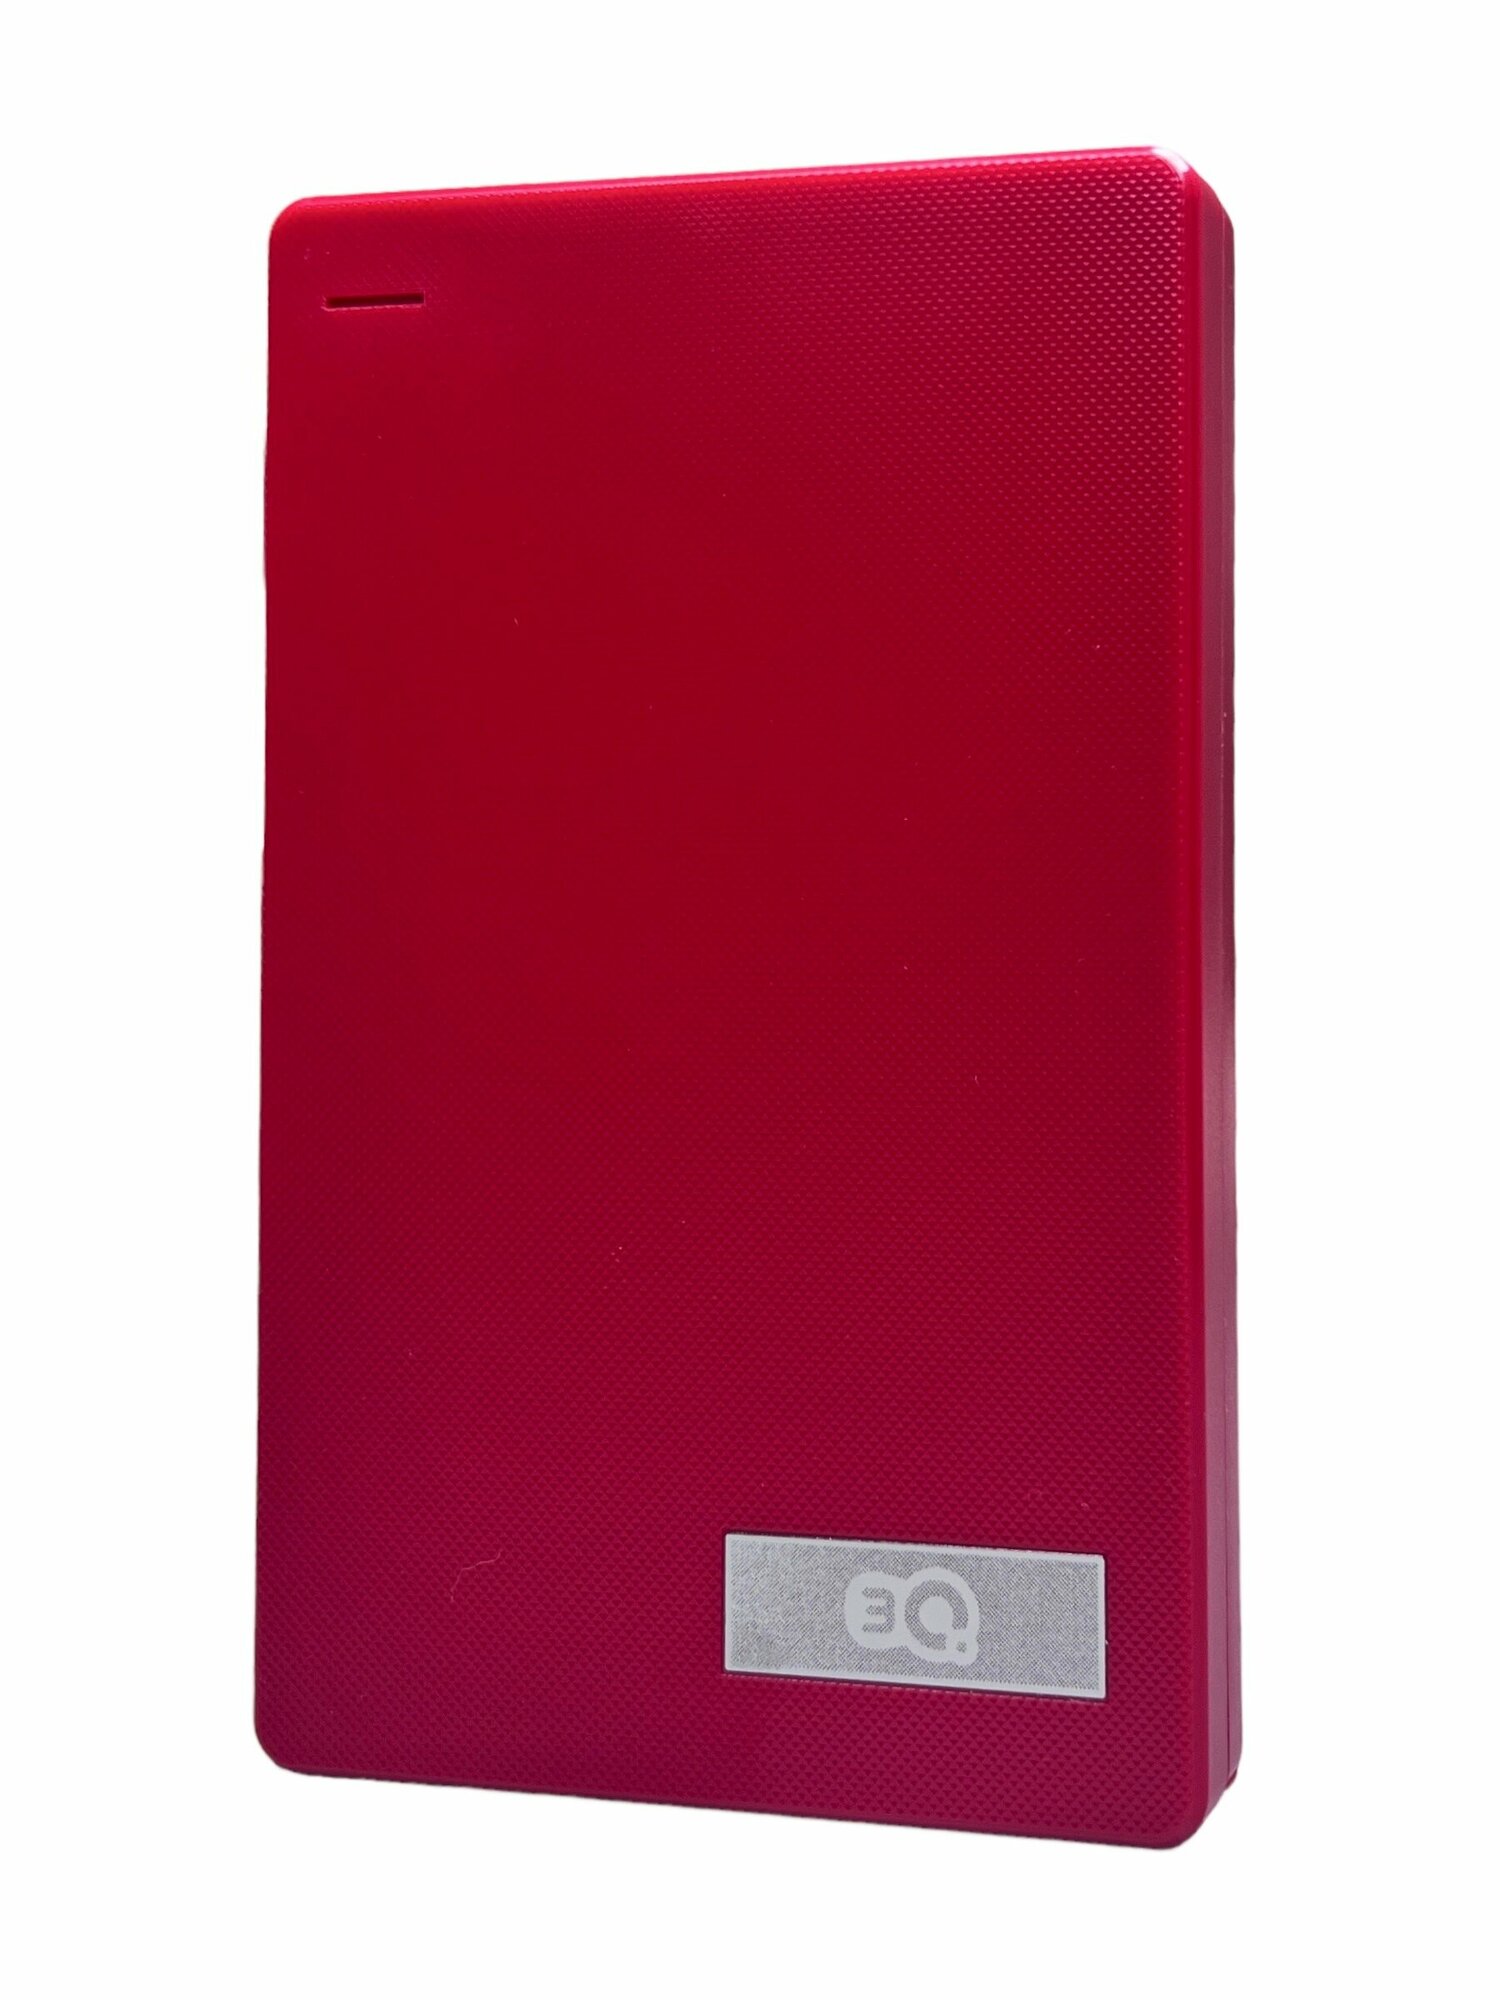 Внешний жесткий диск 500Gb 3Q Portable USB 3.0, Портативный накопитель HDD (3QHDD-S180H-500), красный